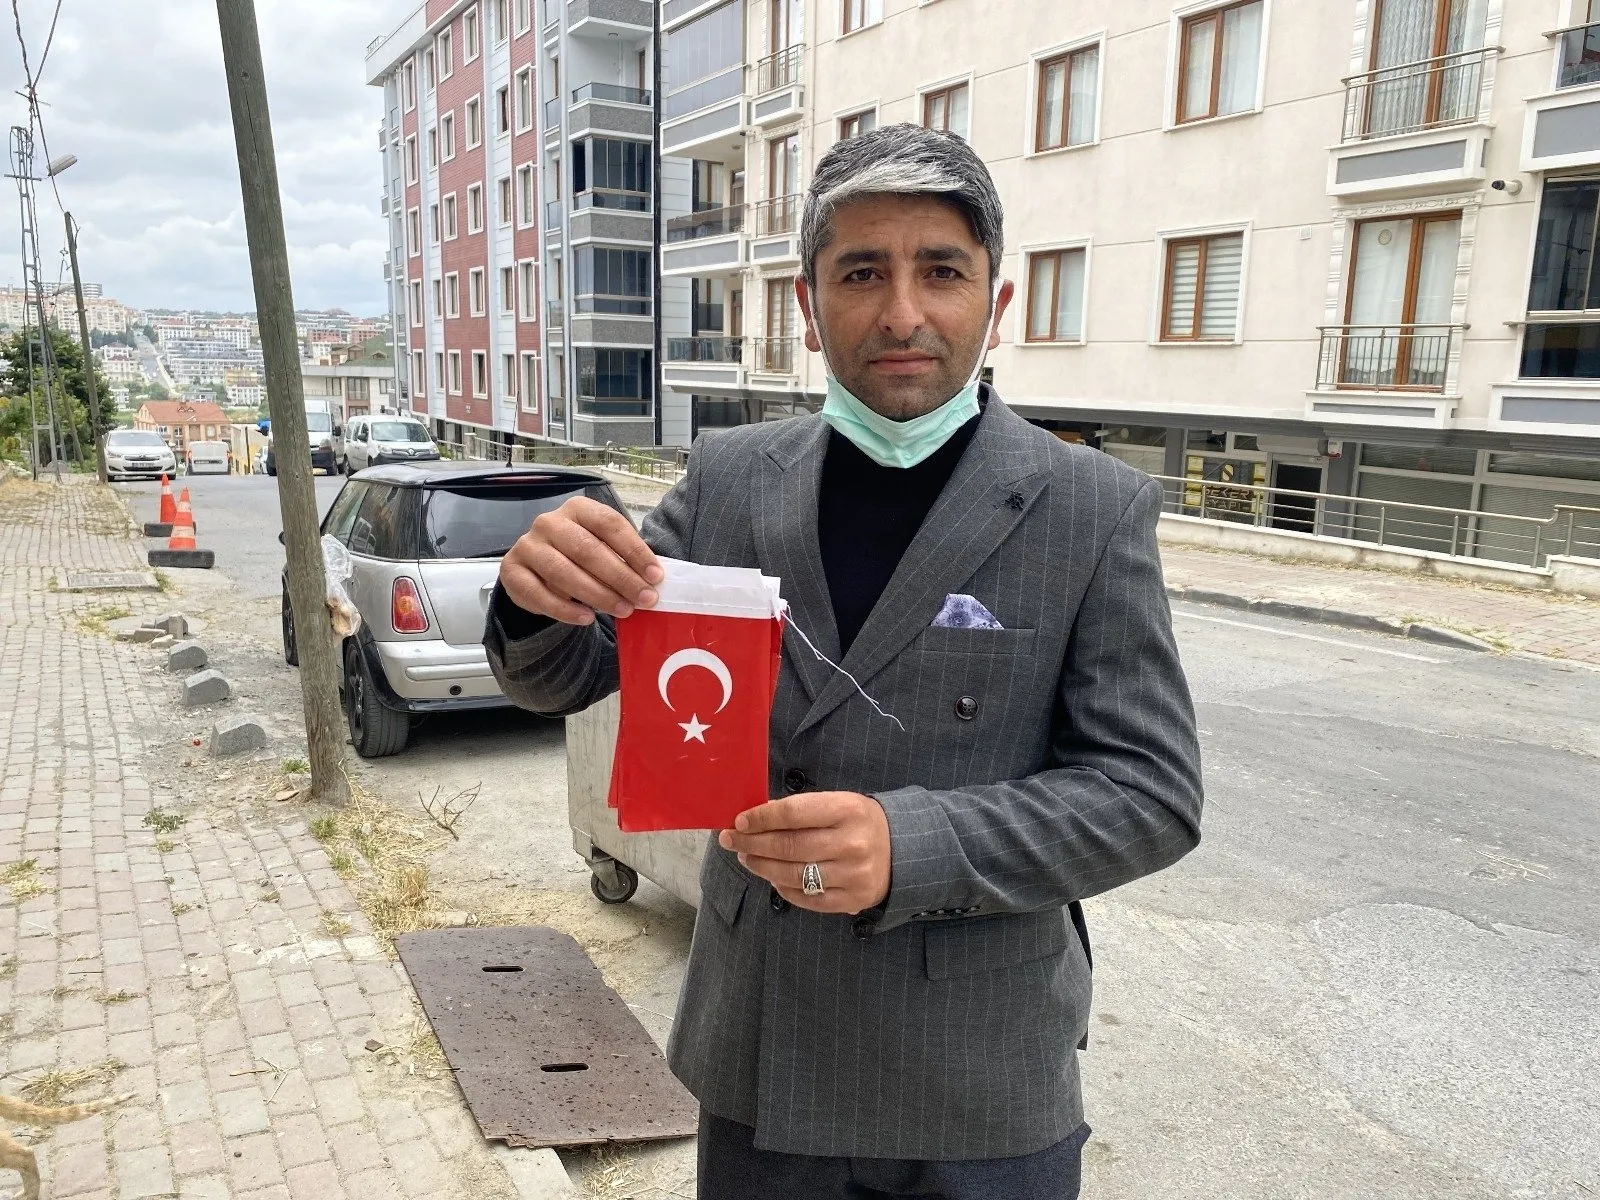 (Özel) Beylikdüzü’nde vatandaşın duygulandıran Türk bayrağı hassasiyeti #istanbul